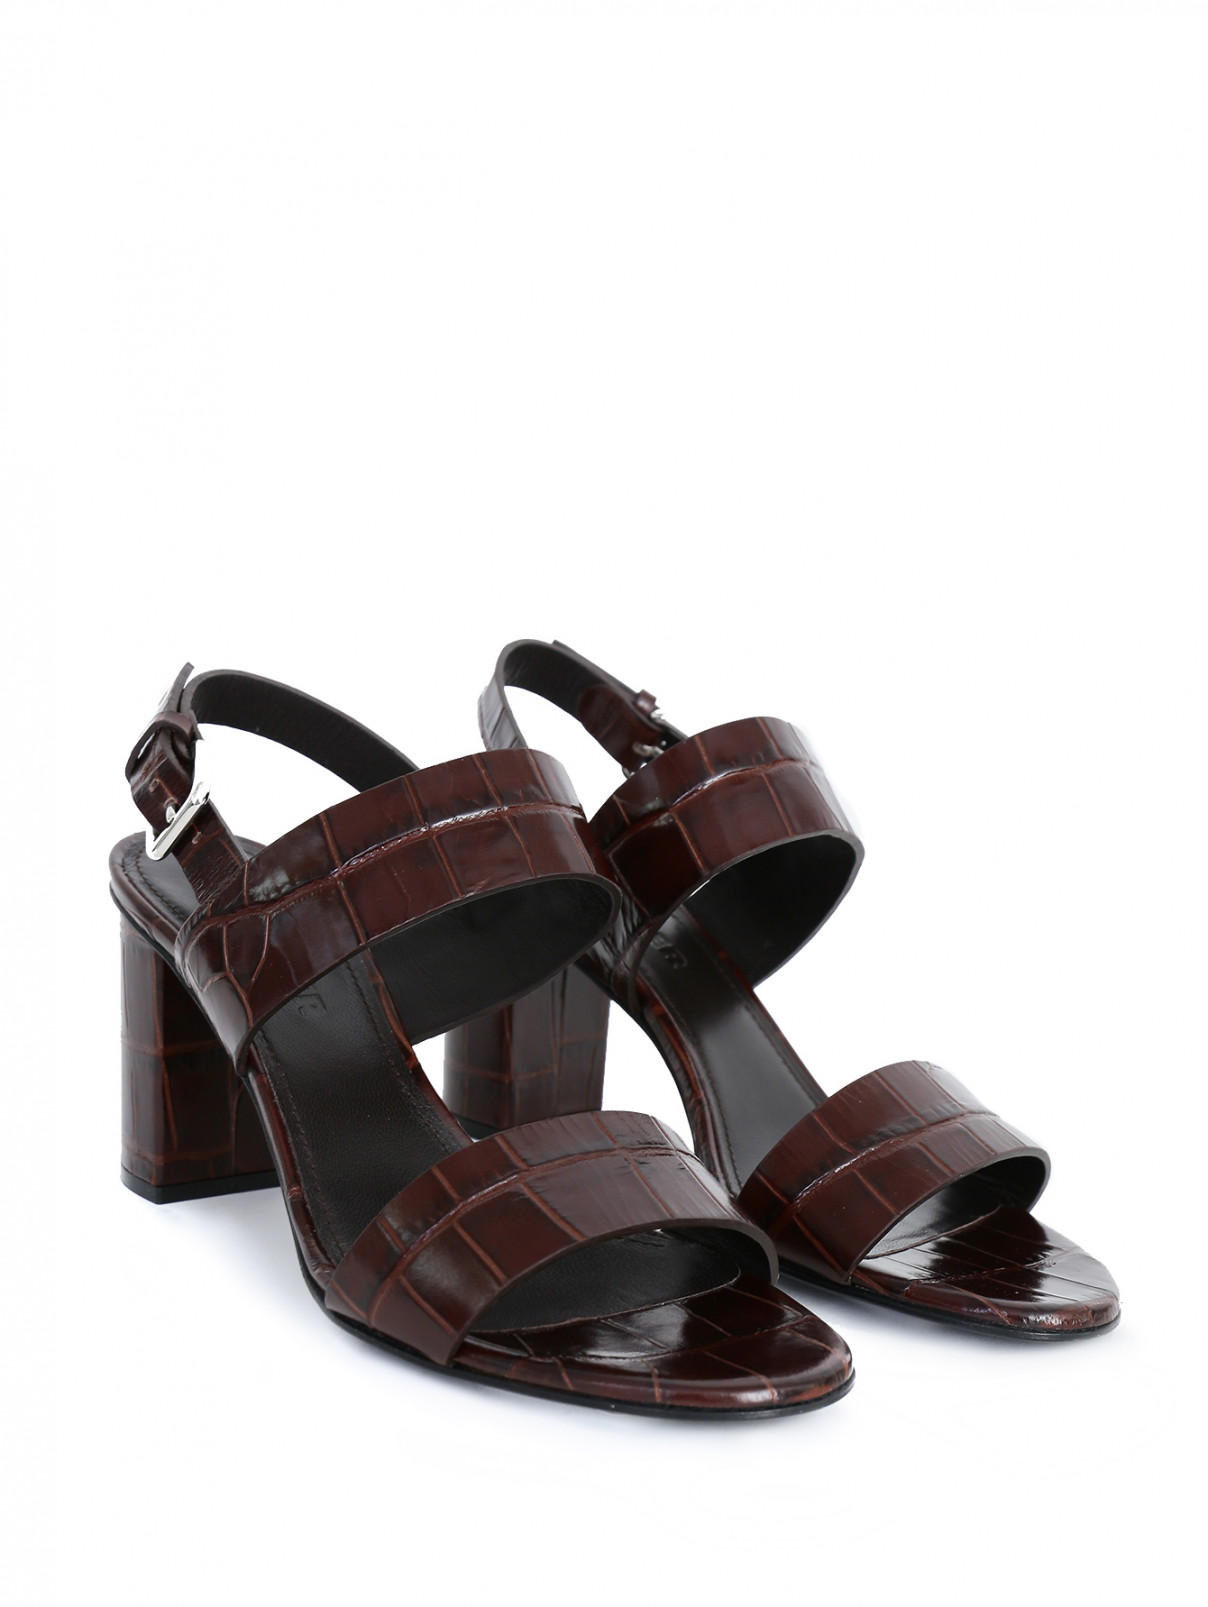 Босоножки из фактурной кожи на устойчивом каблуке Jil Sander  –  Общий вид  – Цвет:  Коричневый